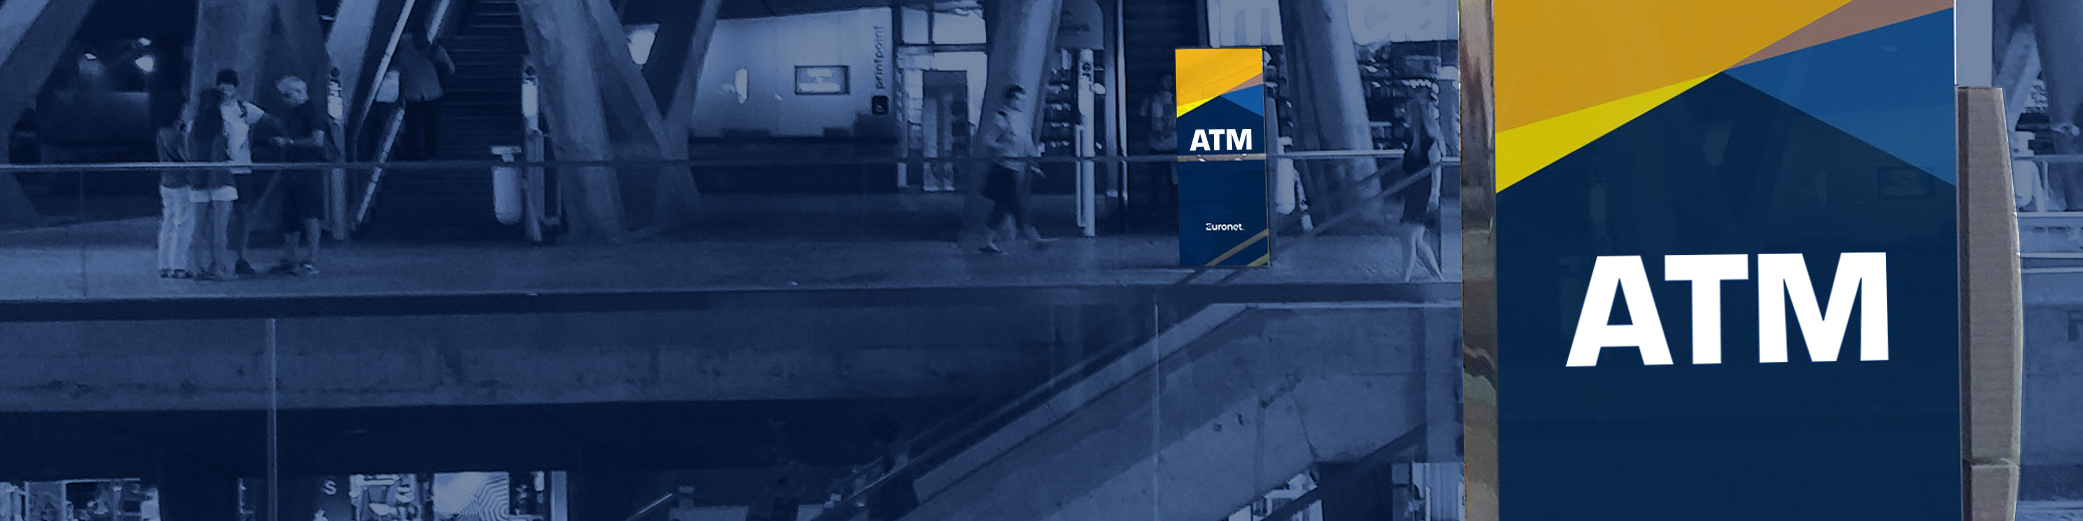 Haga negocio con un ATM en su comercio